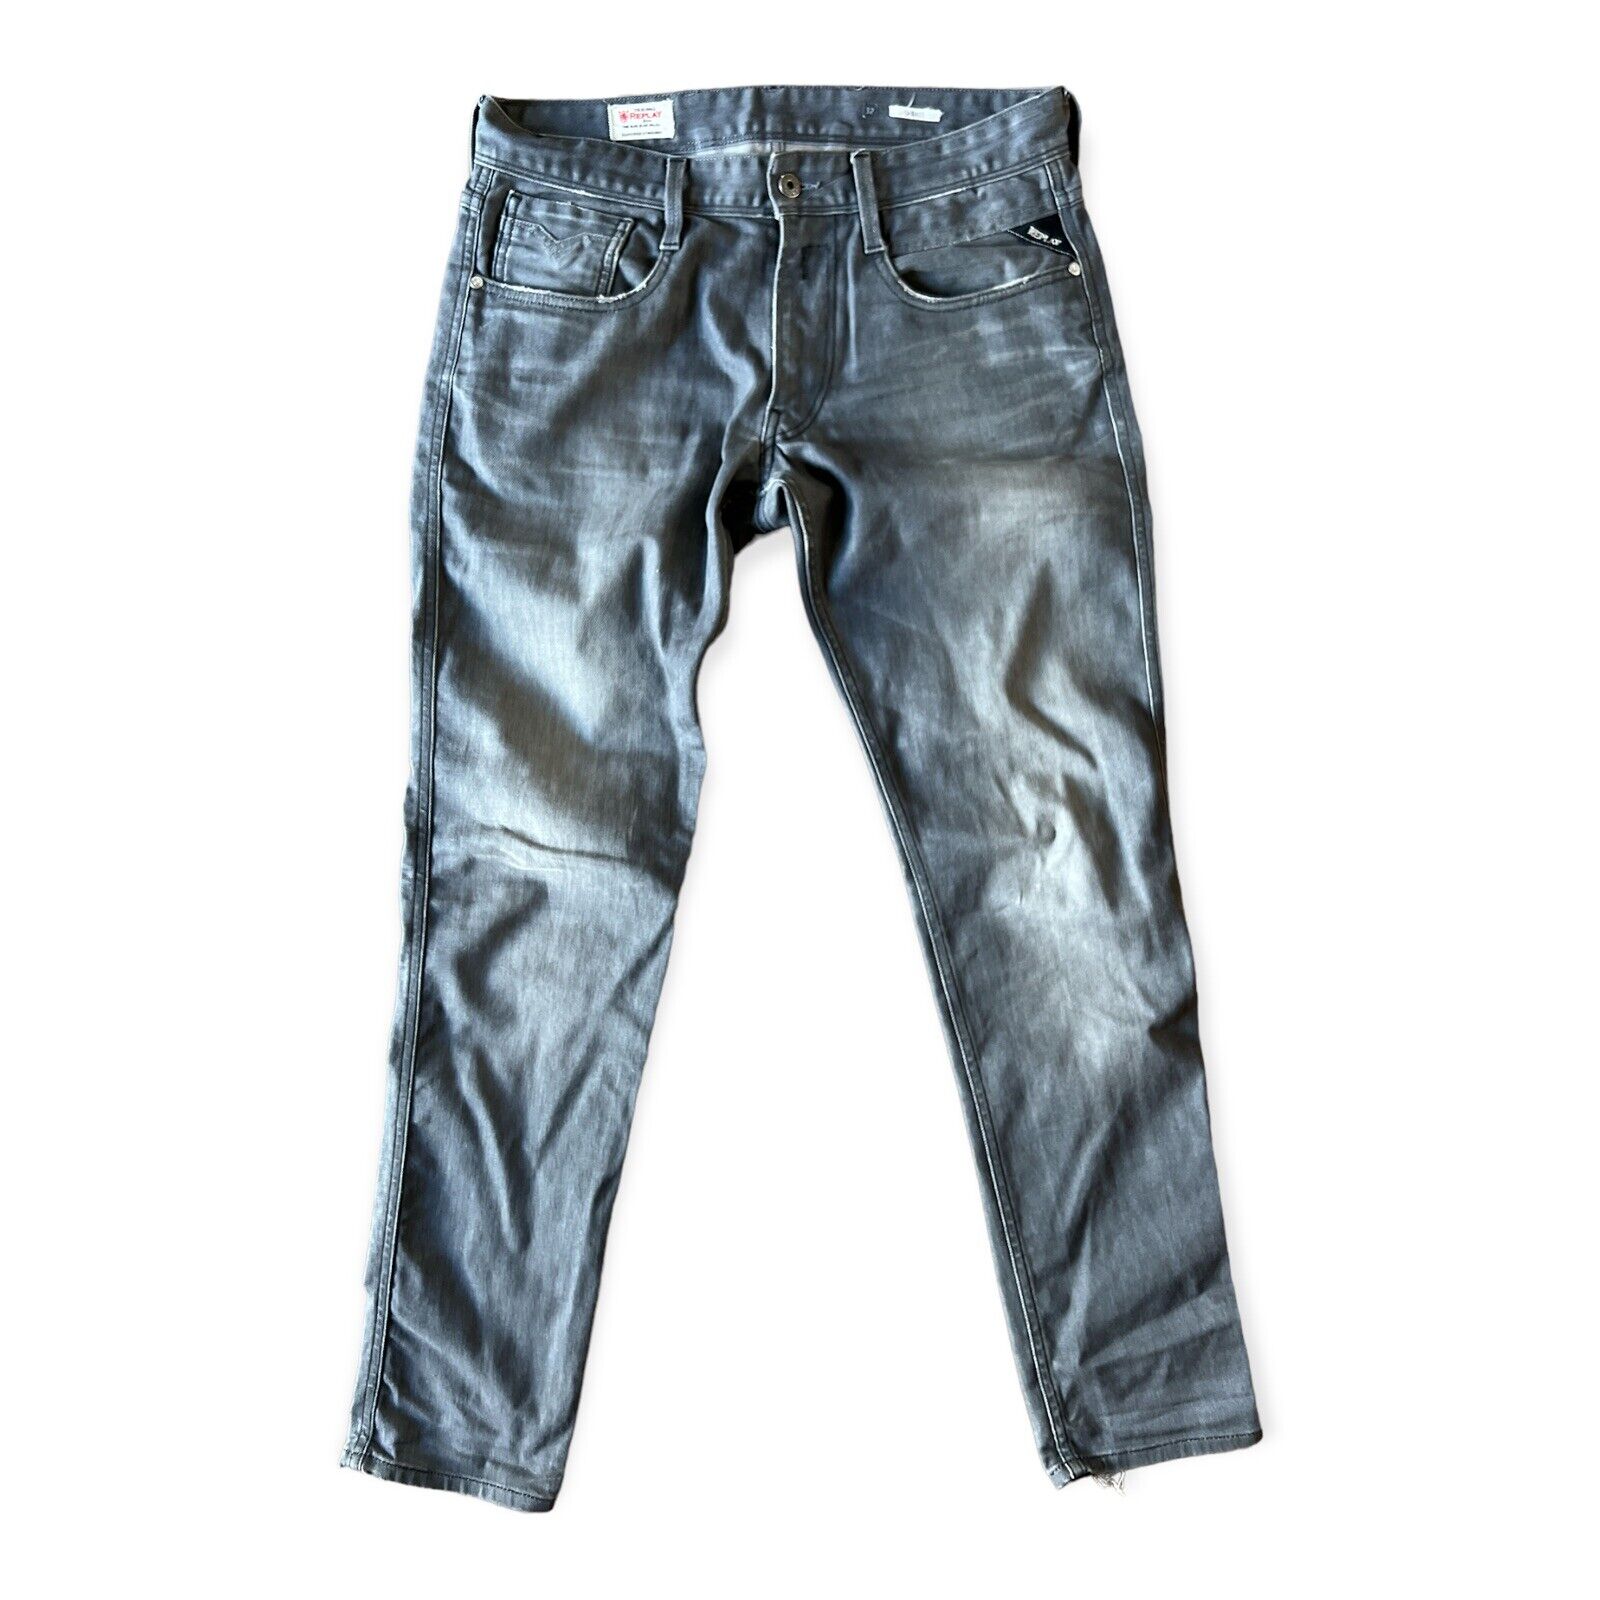 træk uld over øjnene udeladt Cosmic Replay Anbass Men's Grey Hyperflex Slim Fit Jeans, Size 32 | eBay